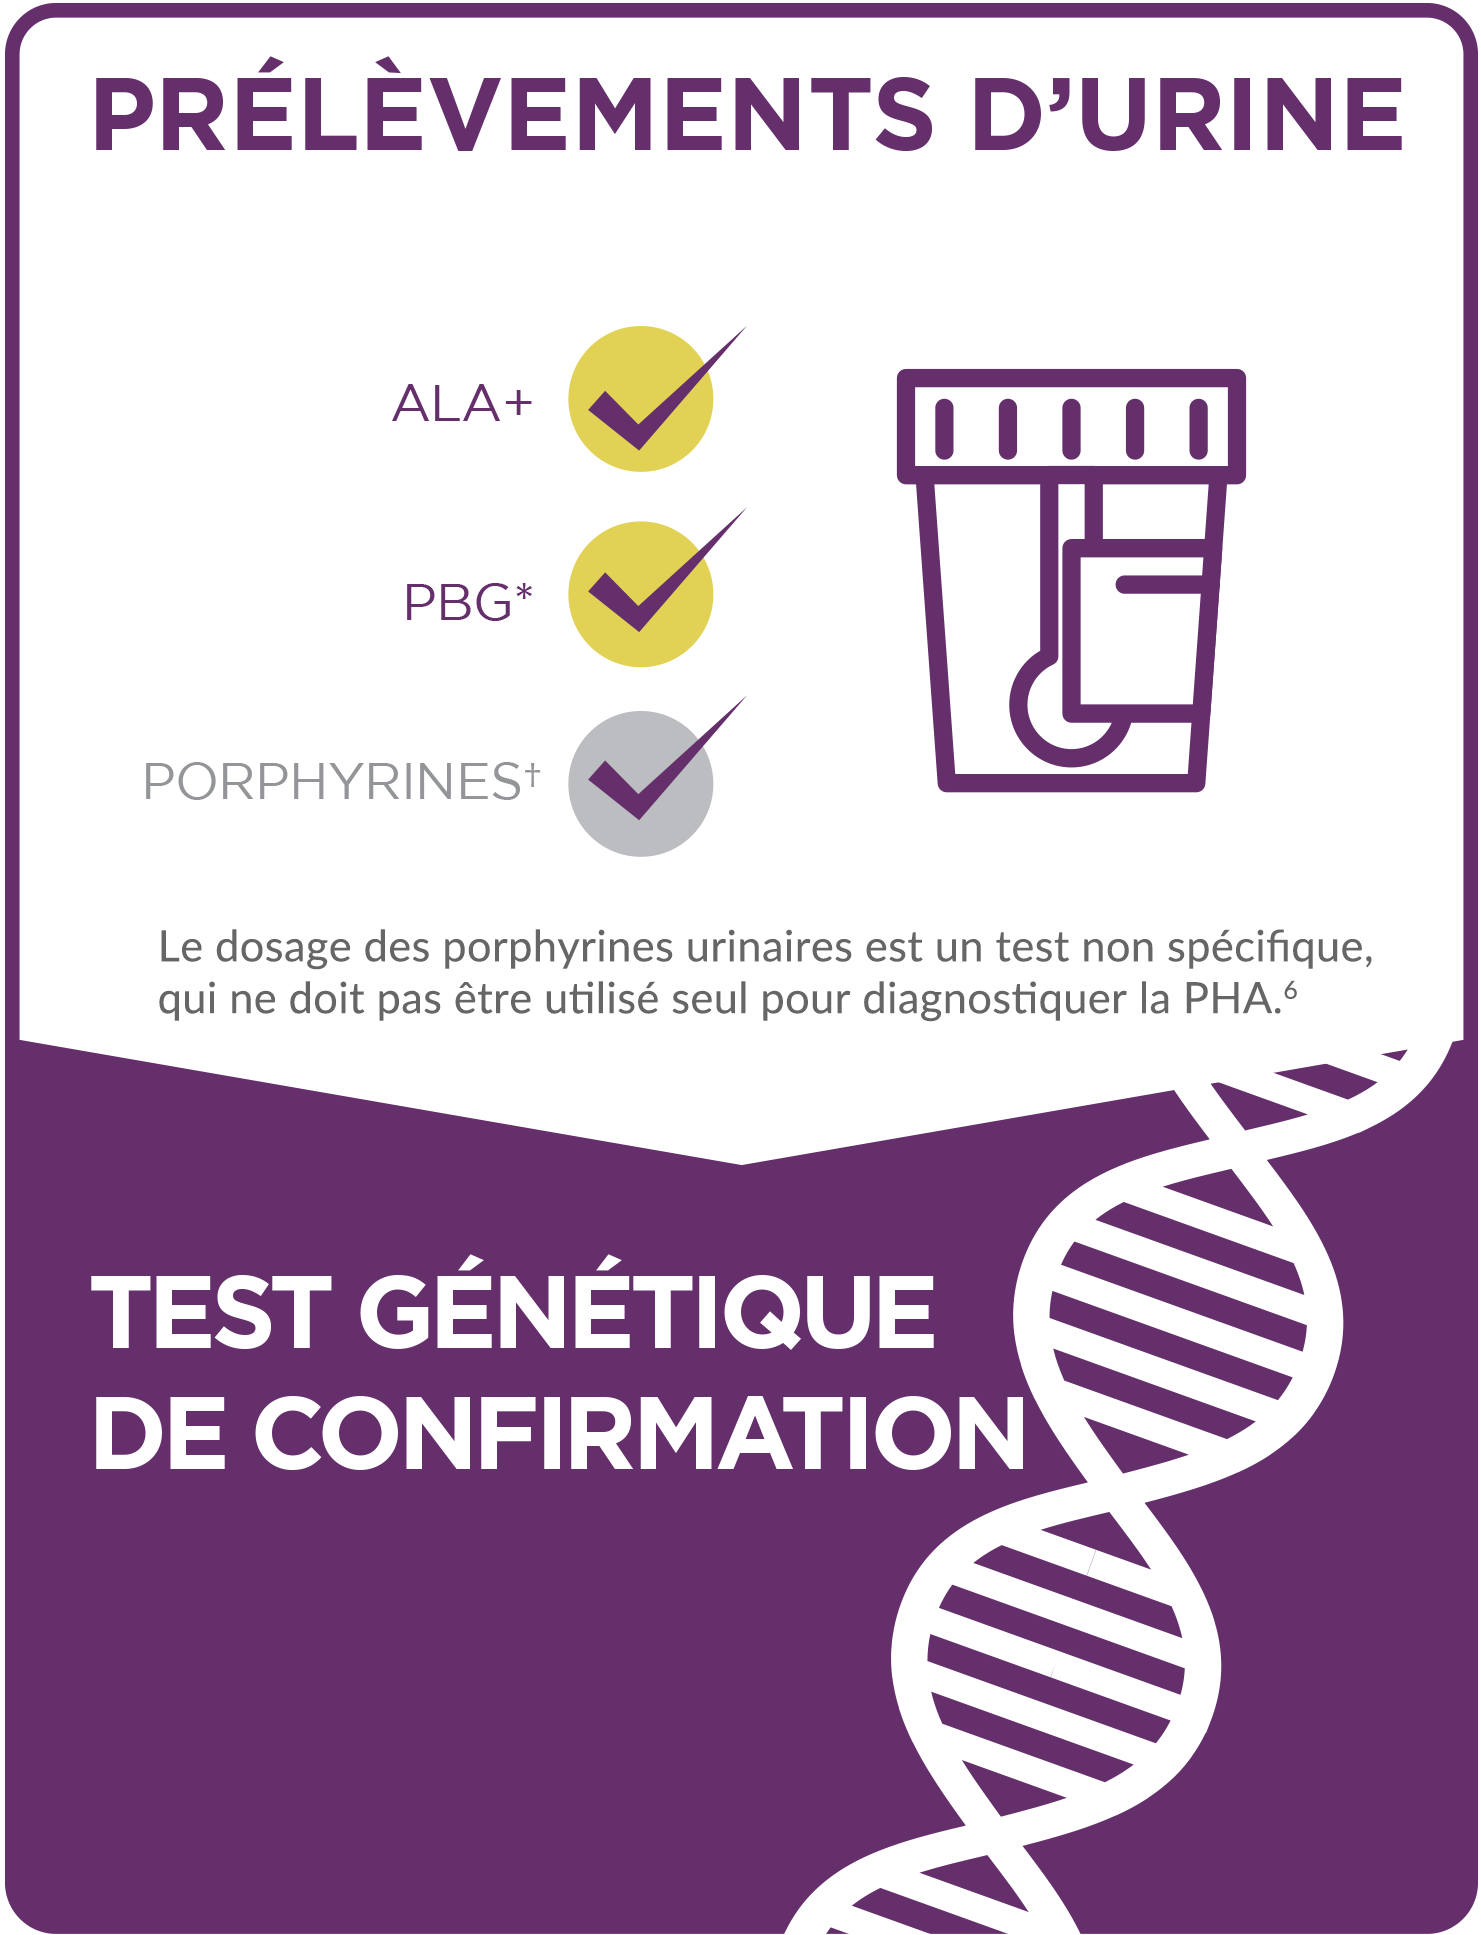 Prélèvements d’urine et confirmation génétique